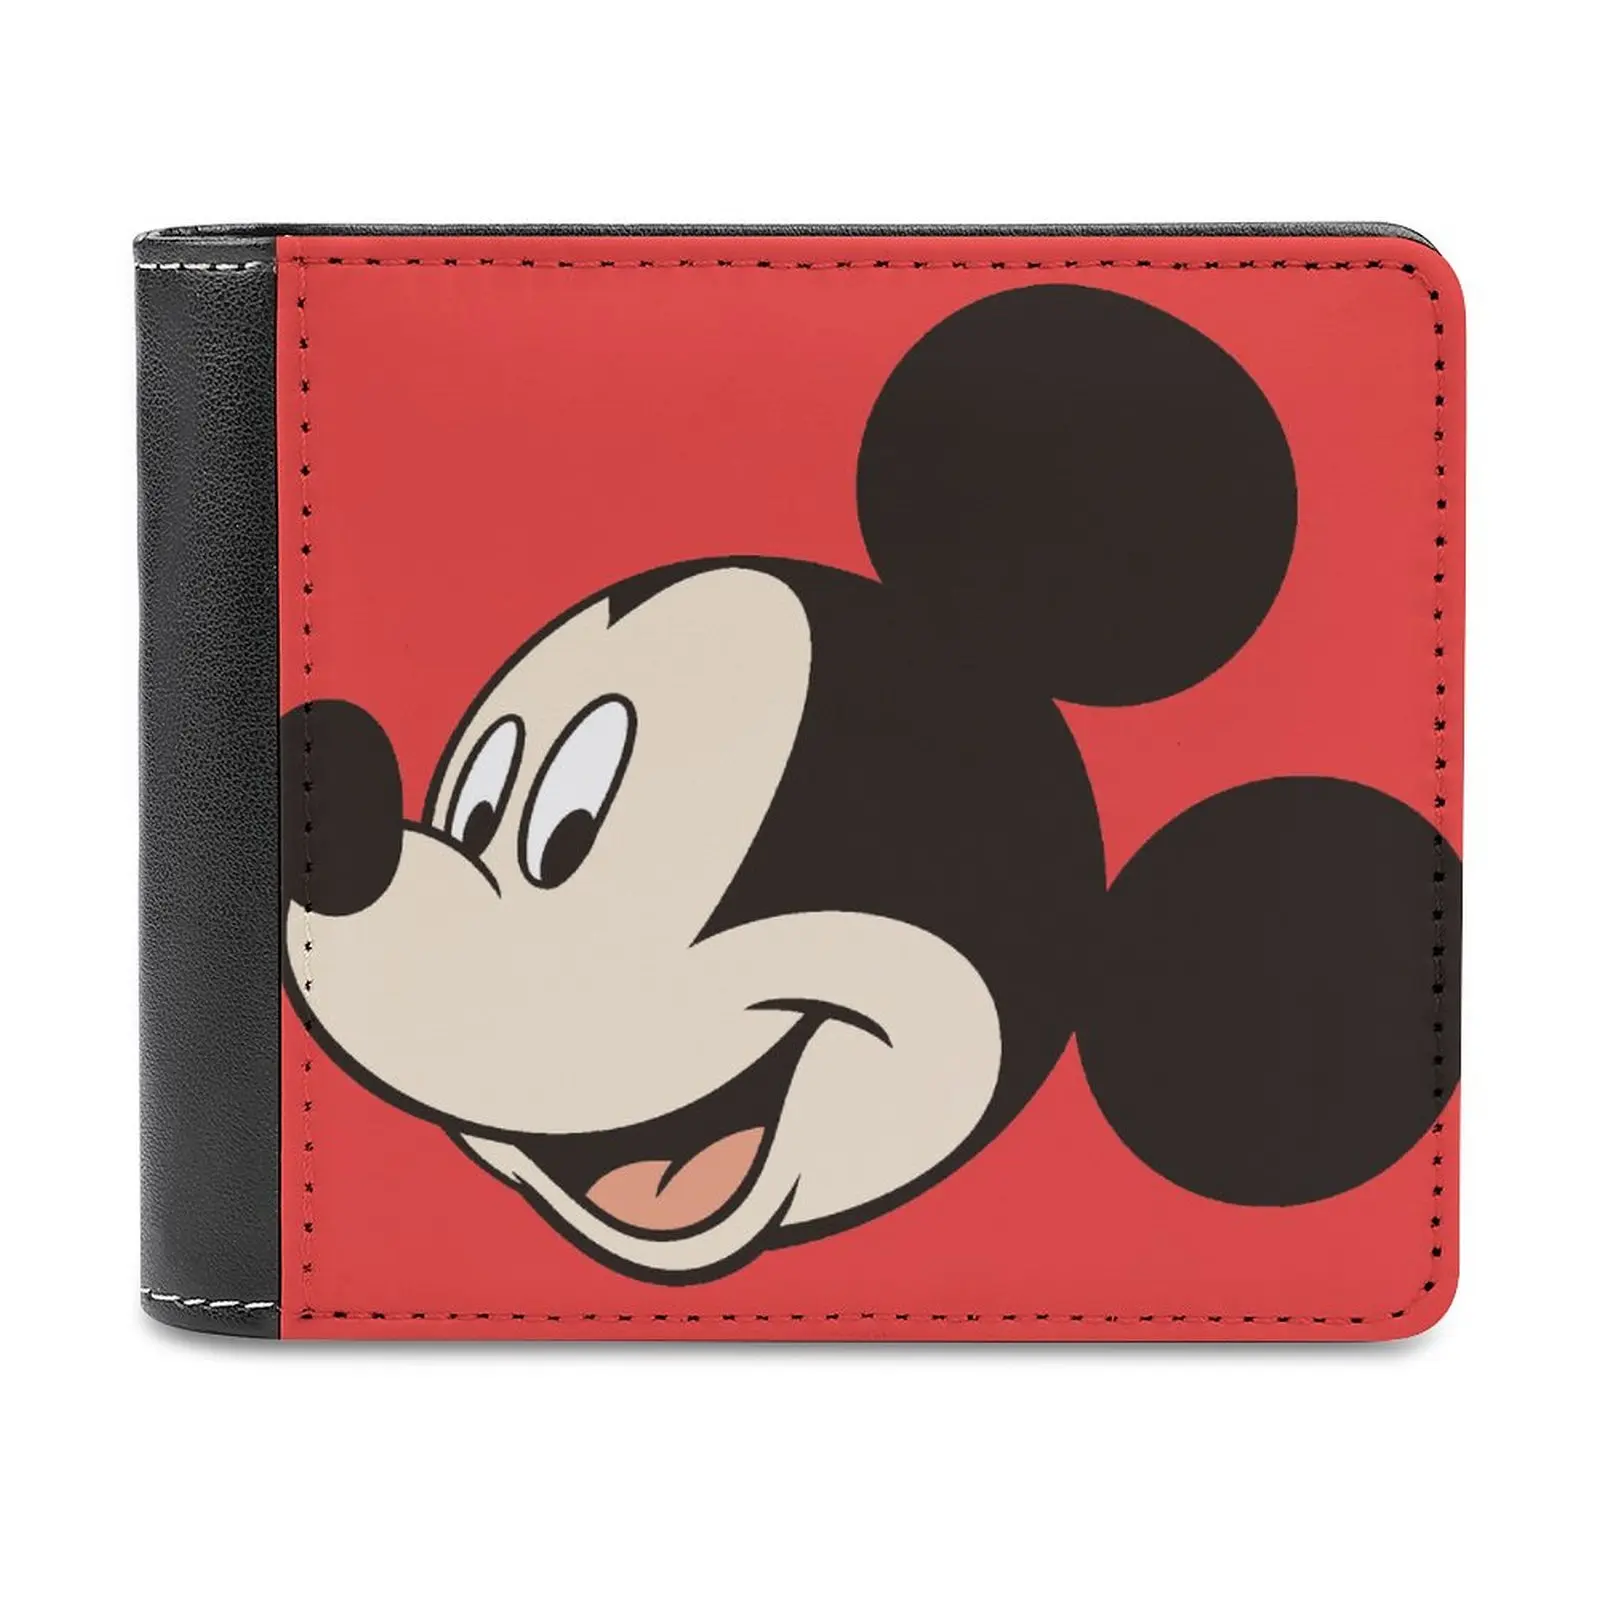 Нейтральный короткий кошелек Disney с Микки Маусом, женская сумочка из искусственной кожи, изготовленный на заказ милый кошелек, игрушечная сумочка в подарок